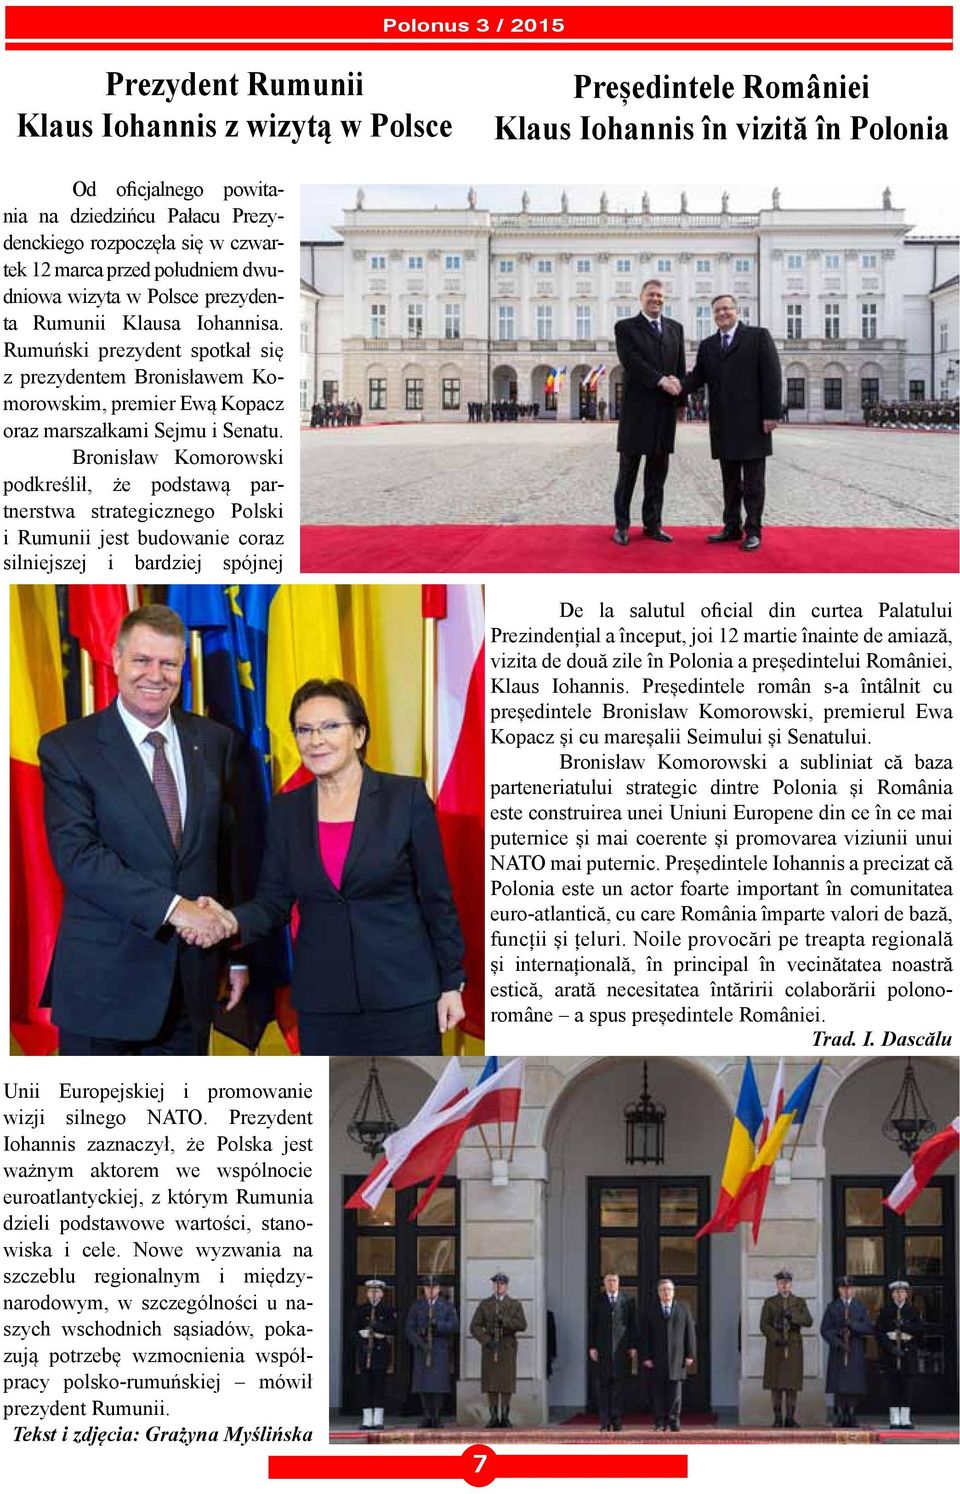 Rumuński prezydent spotkał się z prezydentem Bronisławem Komorowskim, premier Ewą Kopacz oraz marszałkami Sejmu i Senatu.